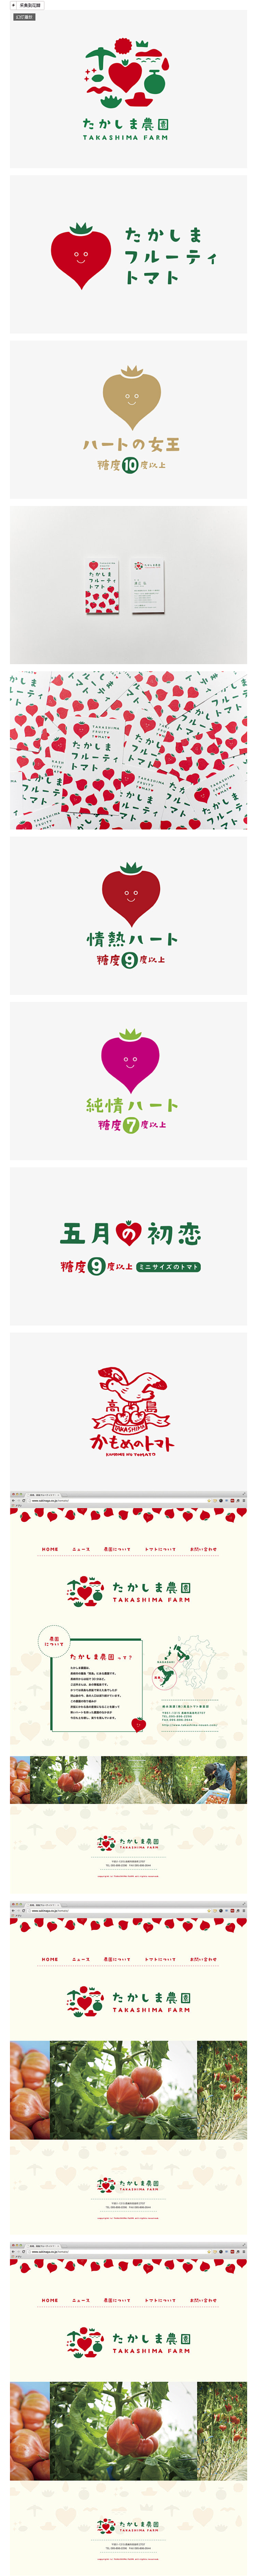 日本的一些品牌设计(每天学点14.6.1...